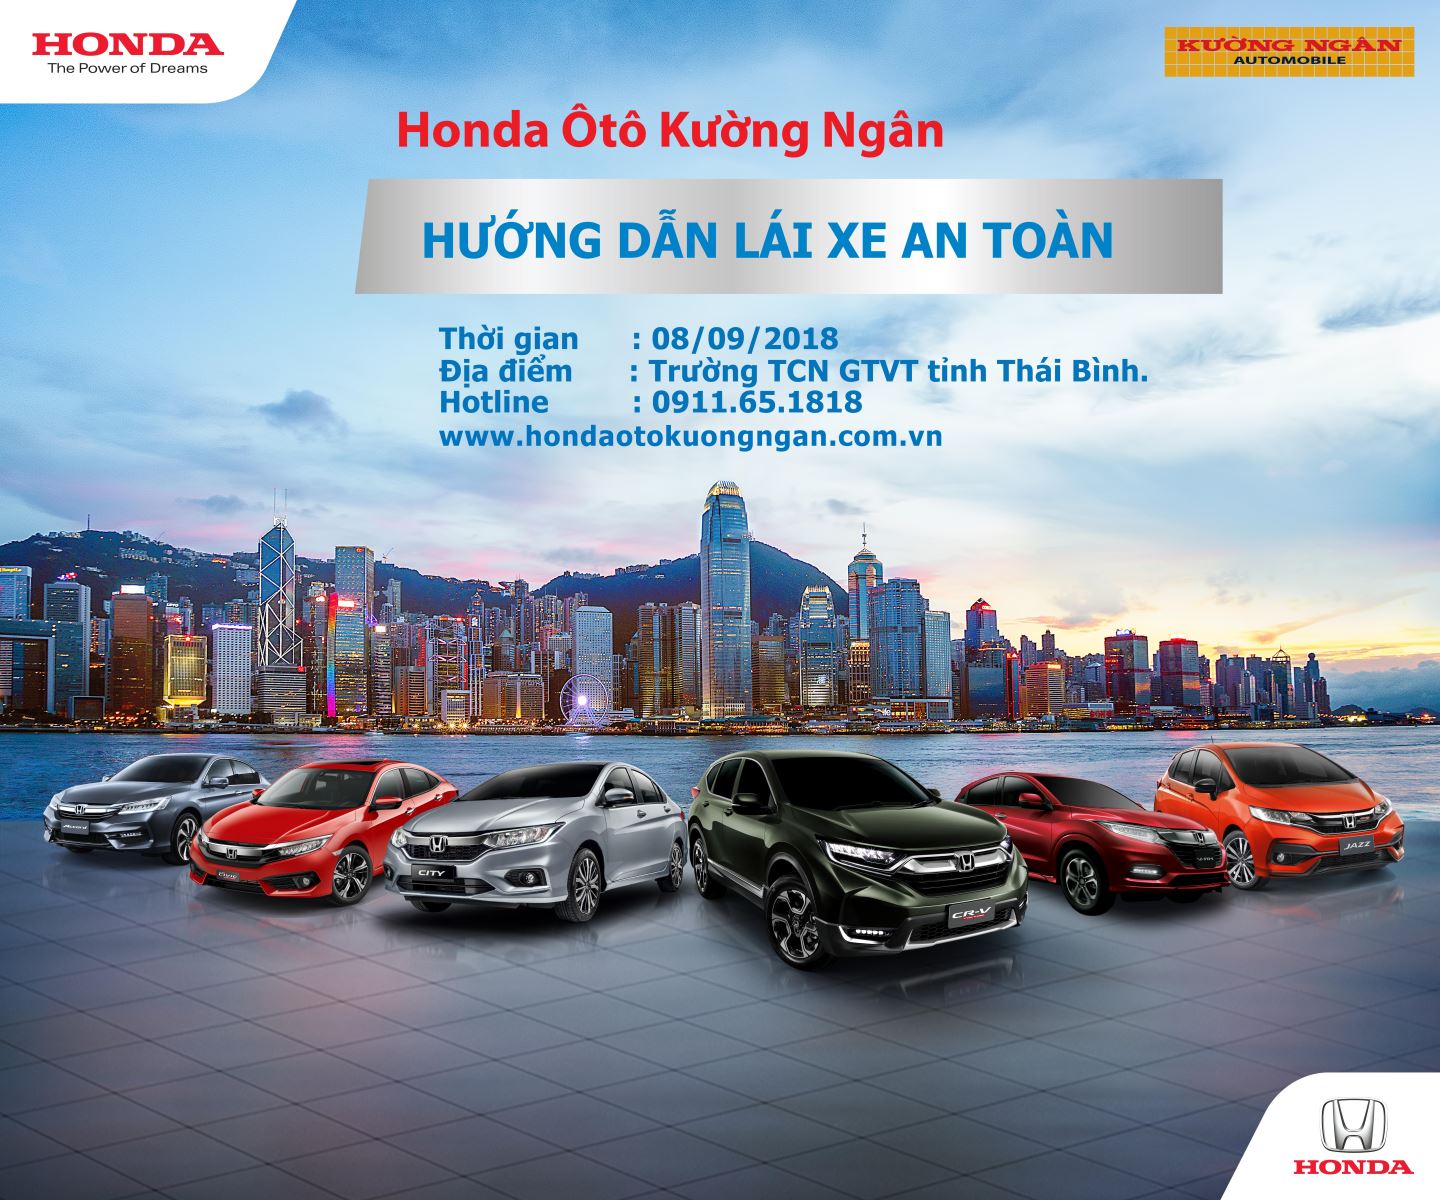 Honda Ôtô Kường Ngân tổ chức  Hướng dẫn Lái xe An toàn cho CBCNV Trường GTVT Thái Bình